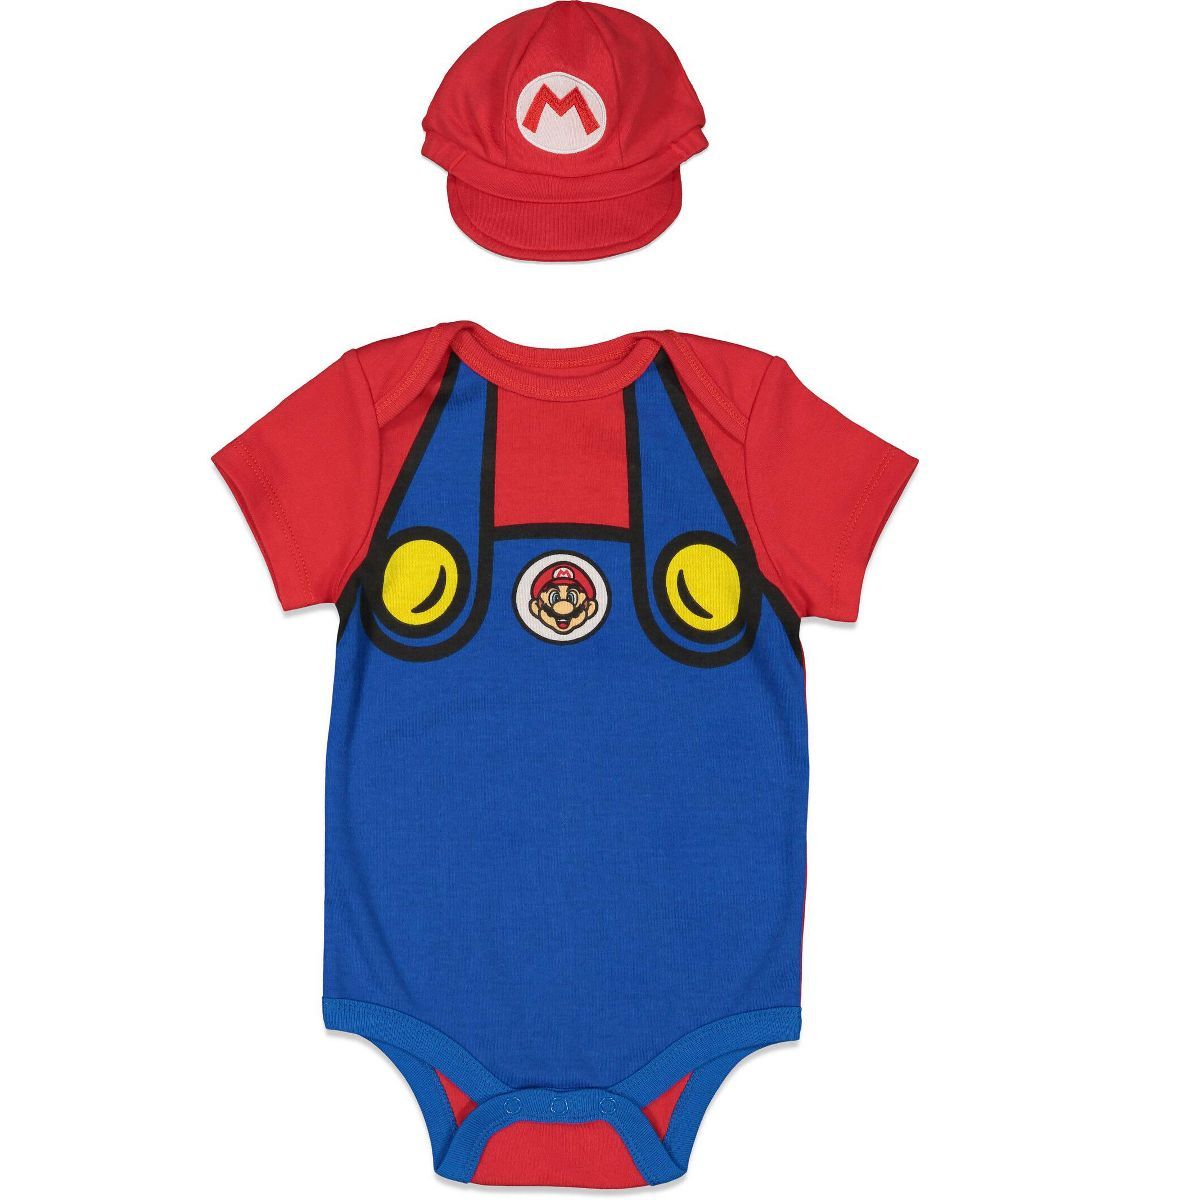 SUPER MARIO Nintendo Mario Luigi Baby Bodysuit and Hat Set Newborn to Infant | Target